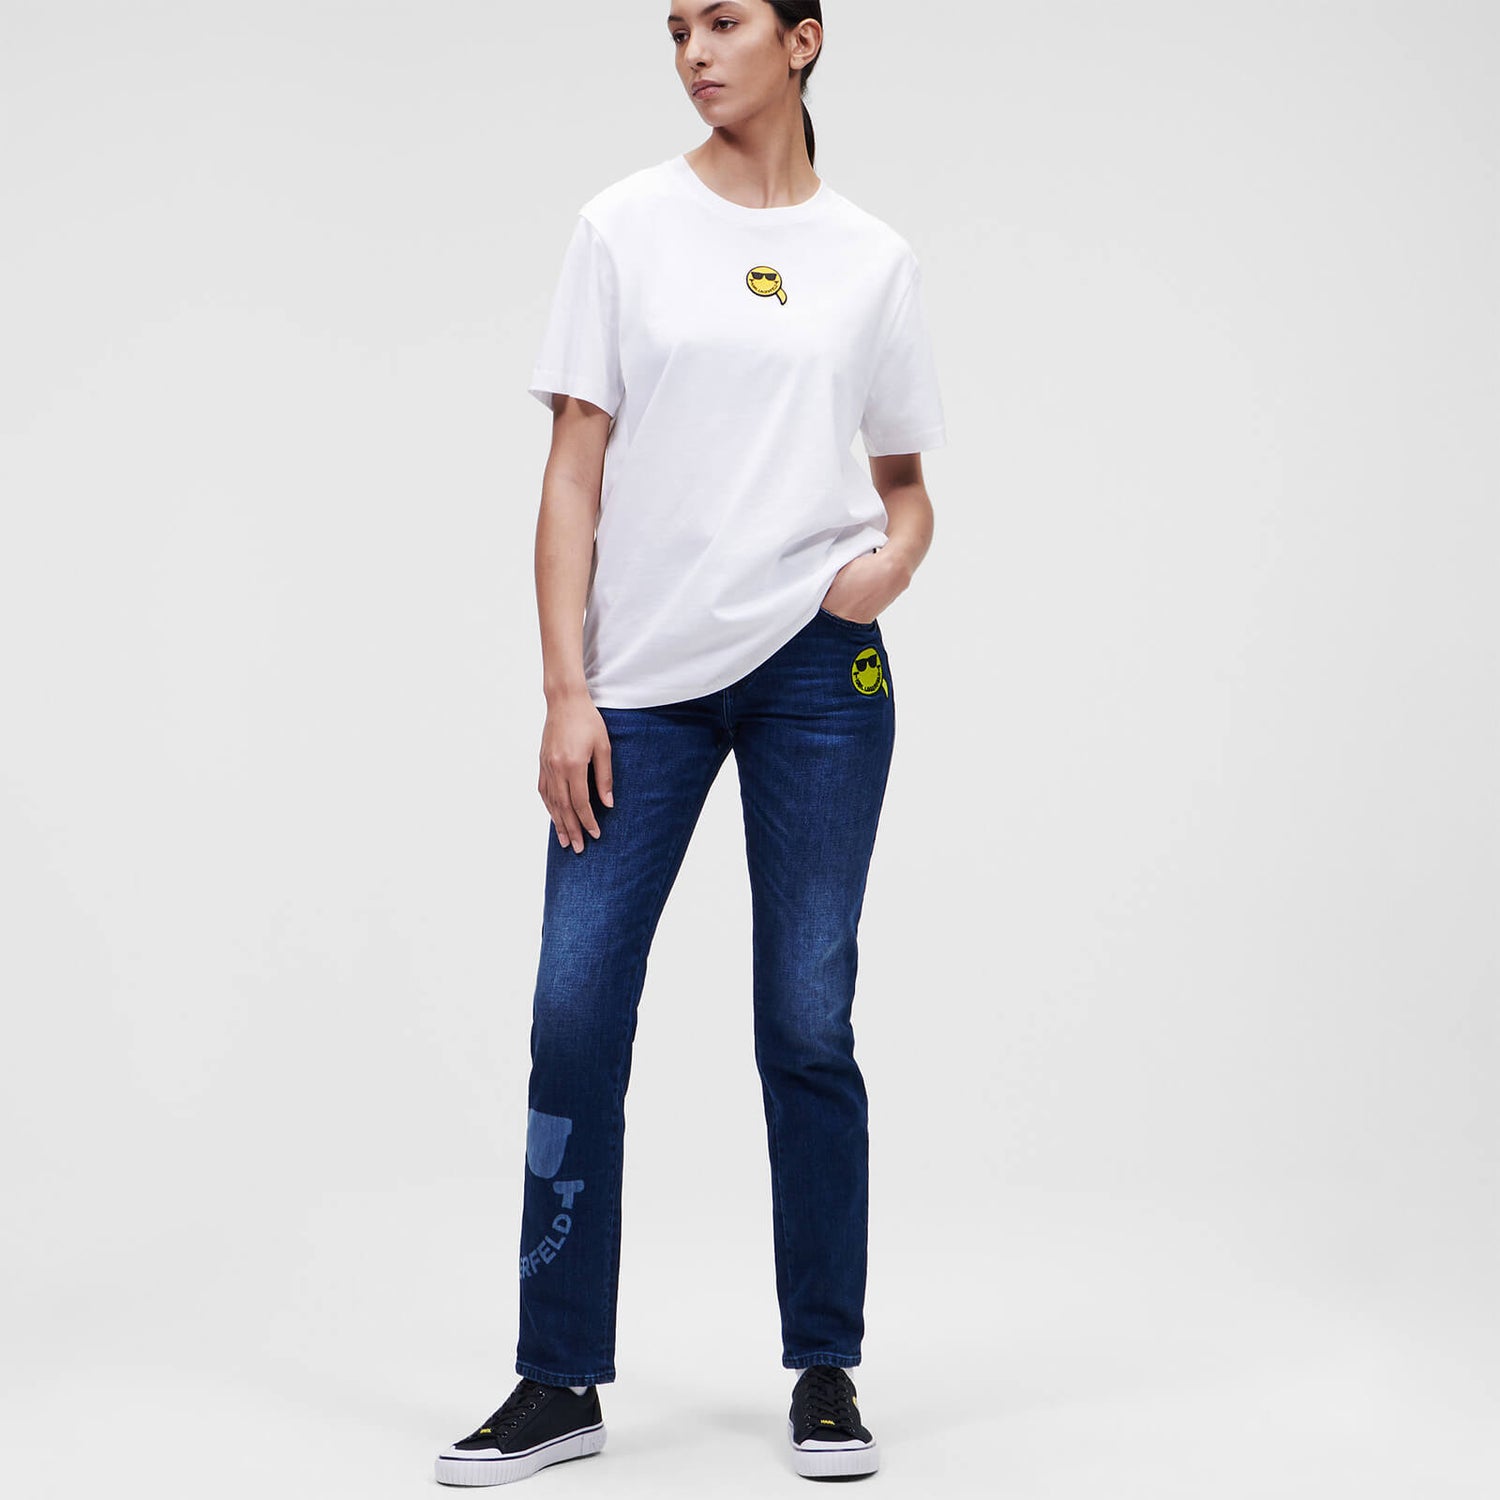 KARL LAGERFELD Women's Unisex Mini Smiley Logo T-Shirt - White